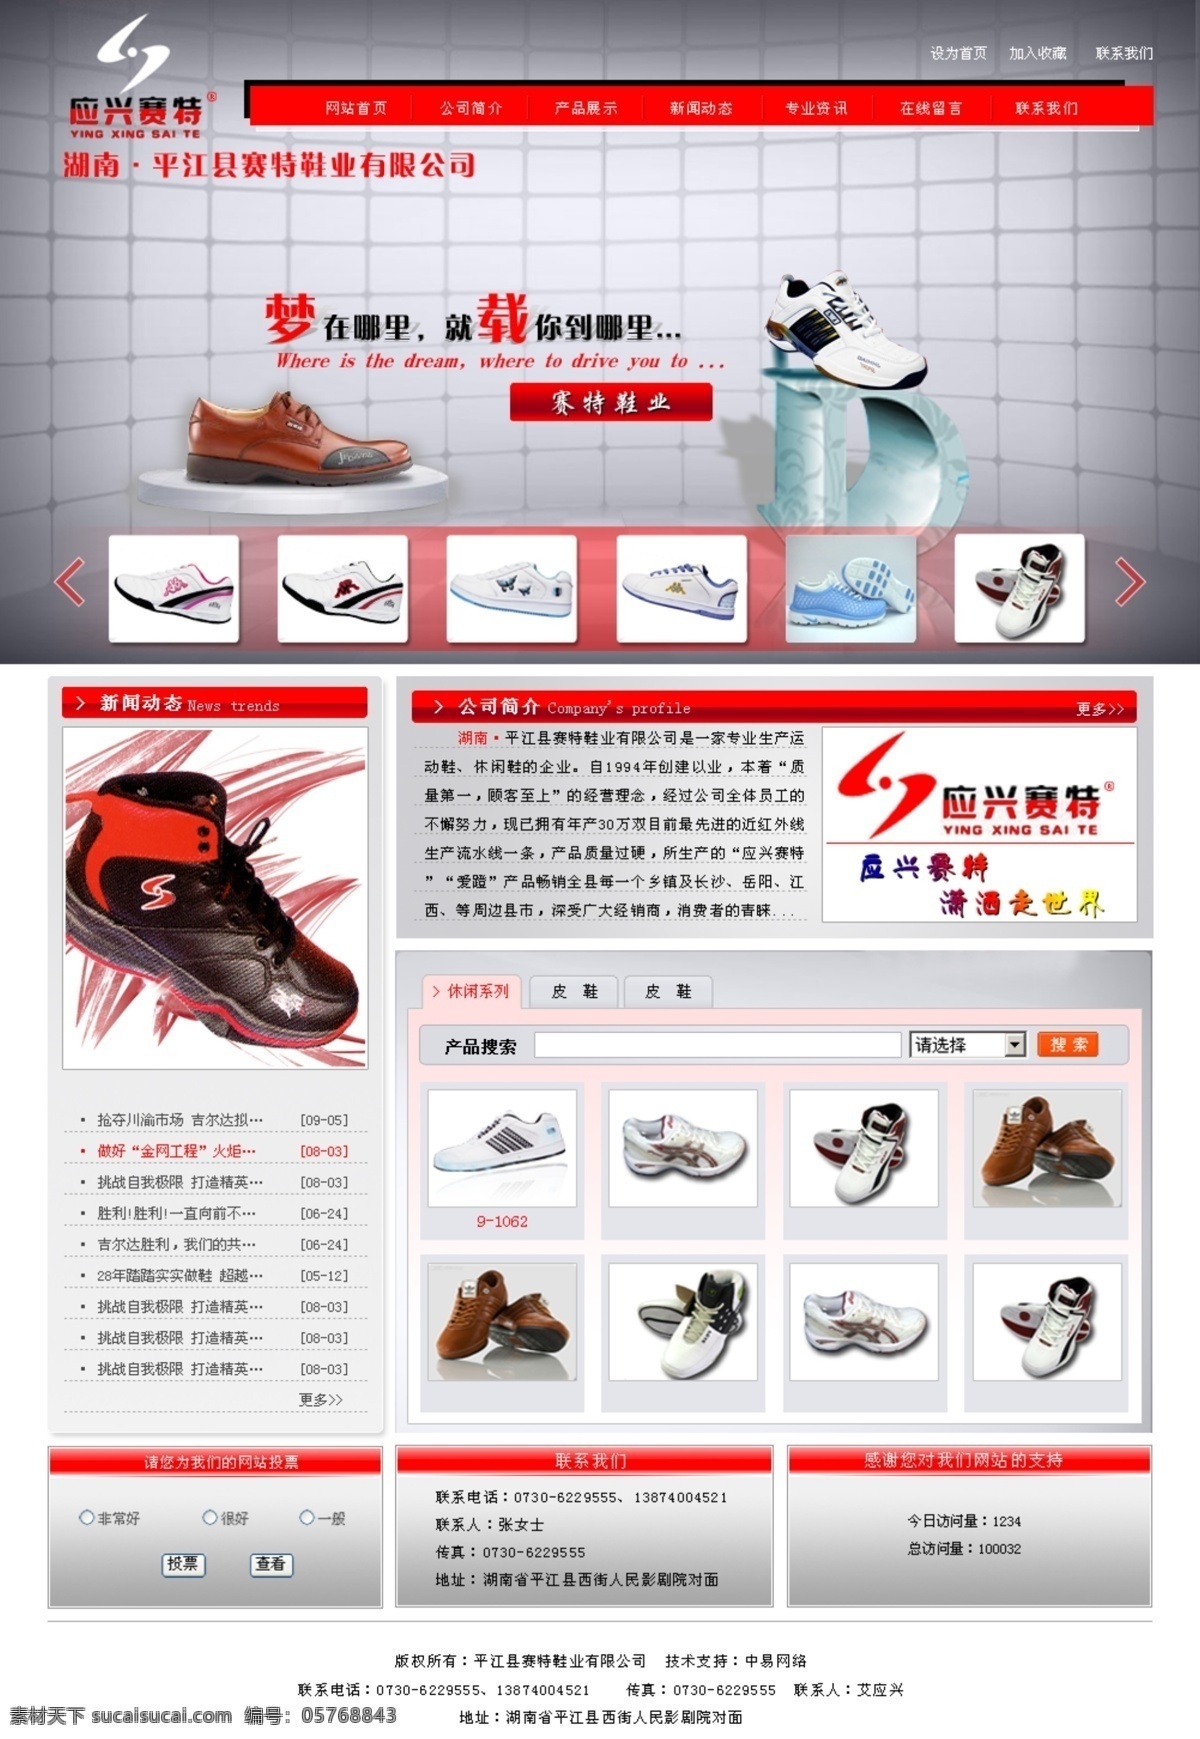 鞋业 网页模板 psd源文件 鞋子 源文件 中文模版 鞋业网页模板 网页素材